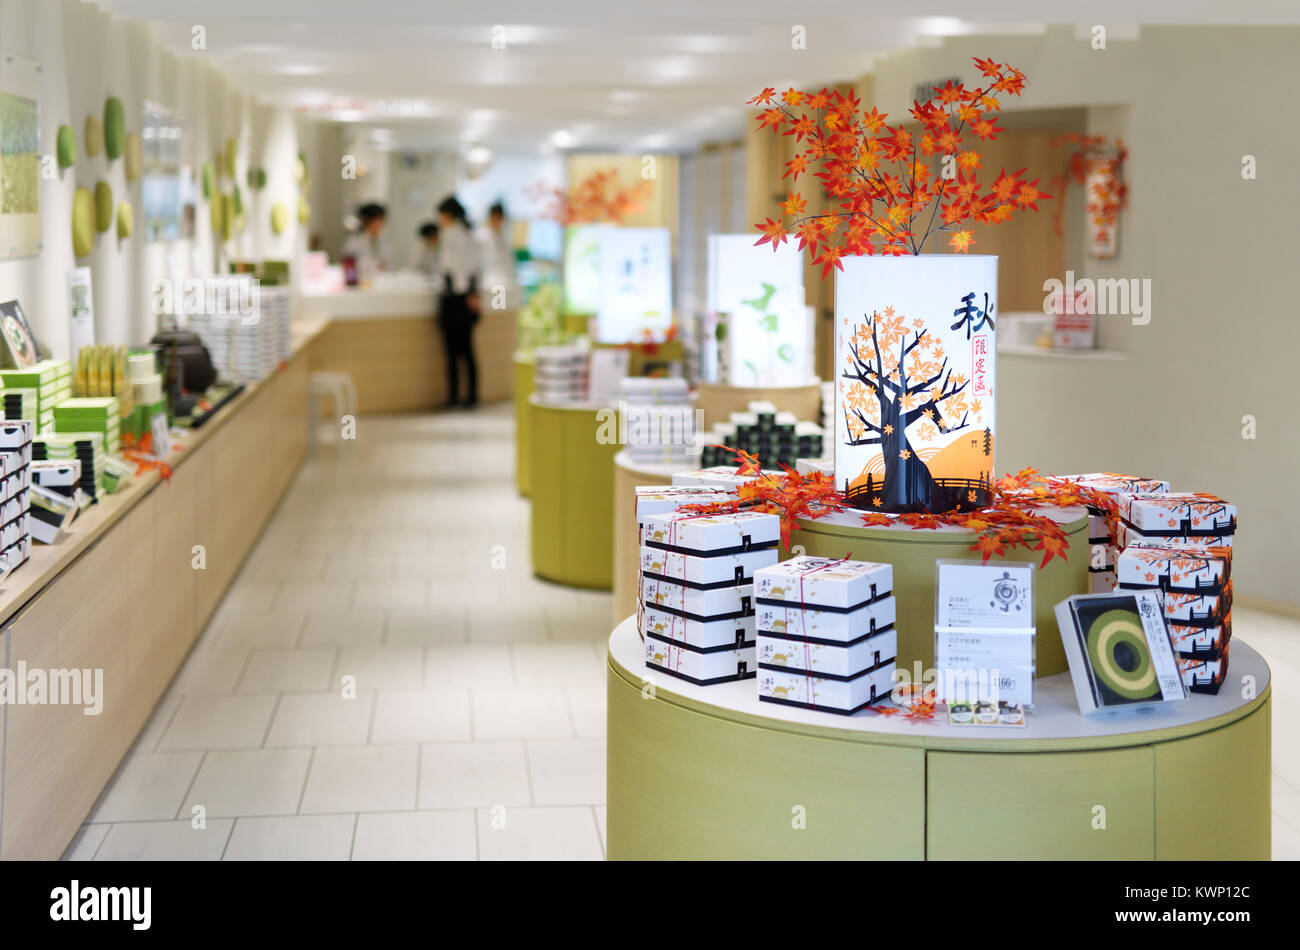 Store in Kyoto spezialisiert auf Kyo Baum, Japanische Matcha und Sojamilch Baumkuchen, ringförmige Reiskuchen souvenir Dessert behandelt. Kyoto, Japan 2017. Stockfoto